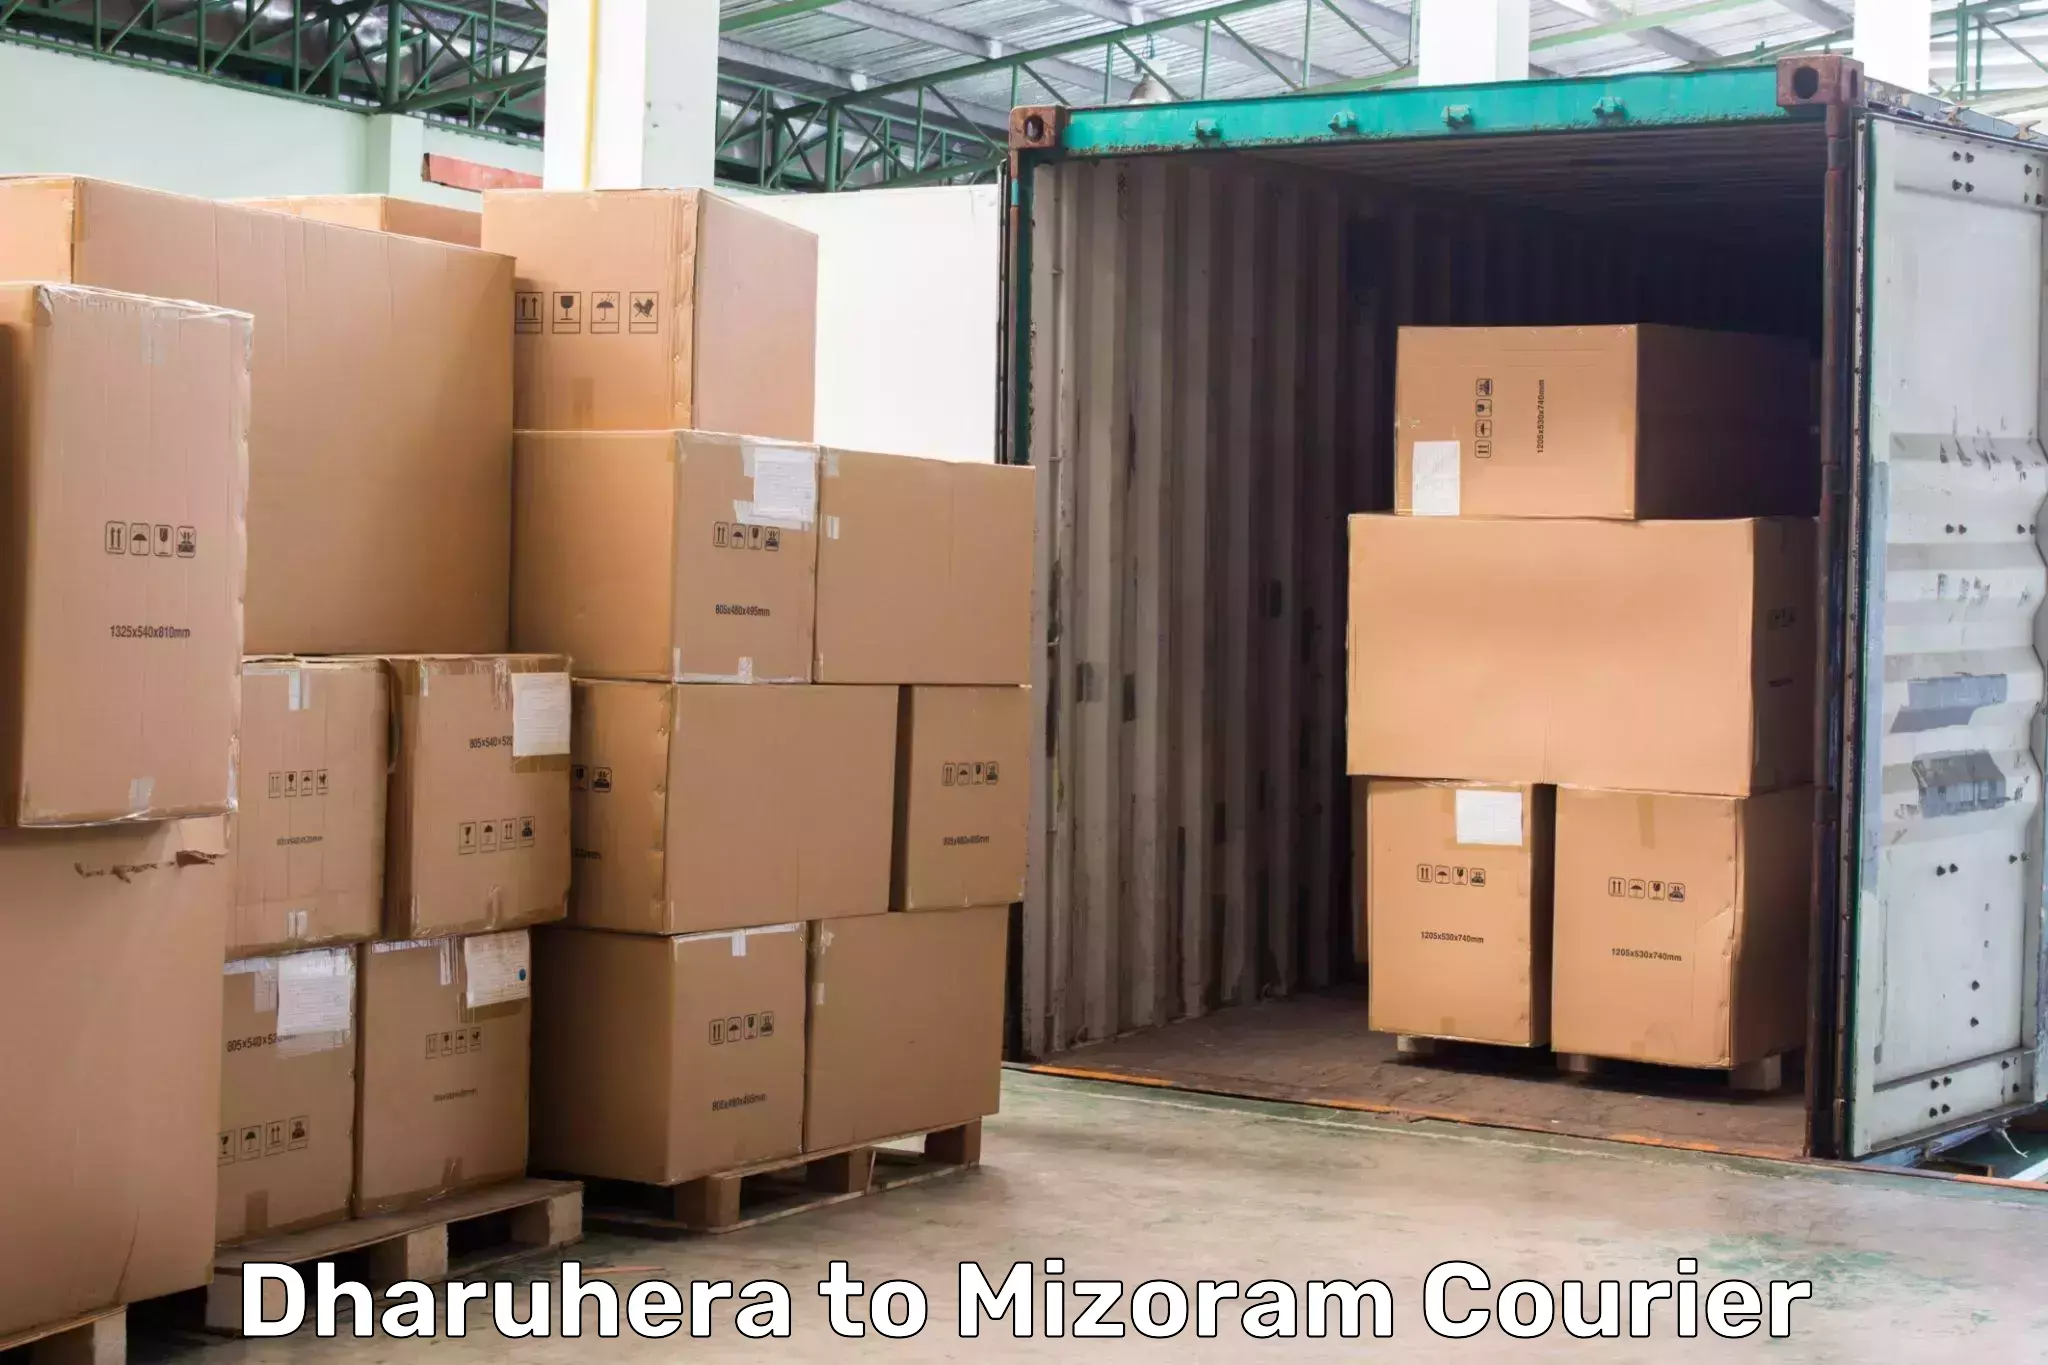 Package tracking in Dharuhera to Serchhip